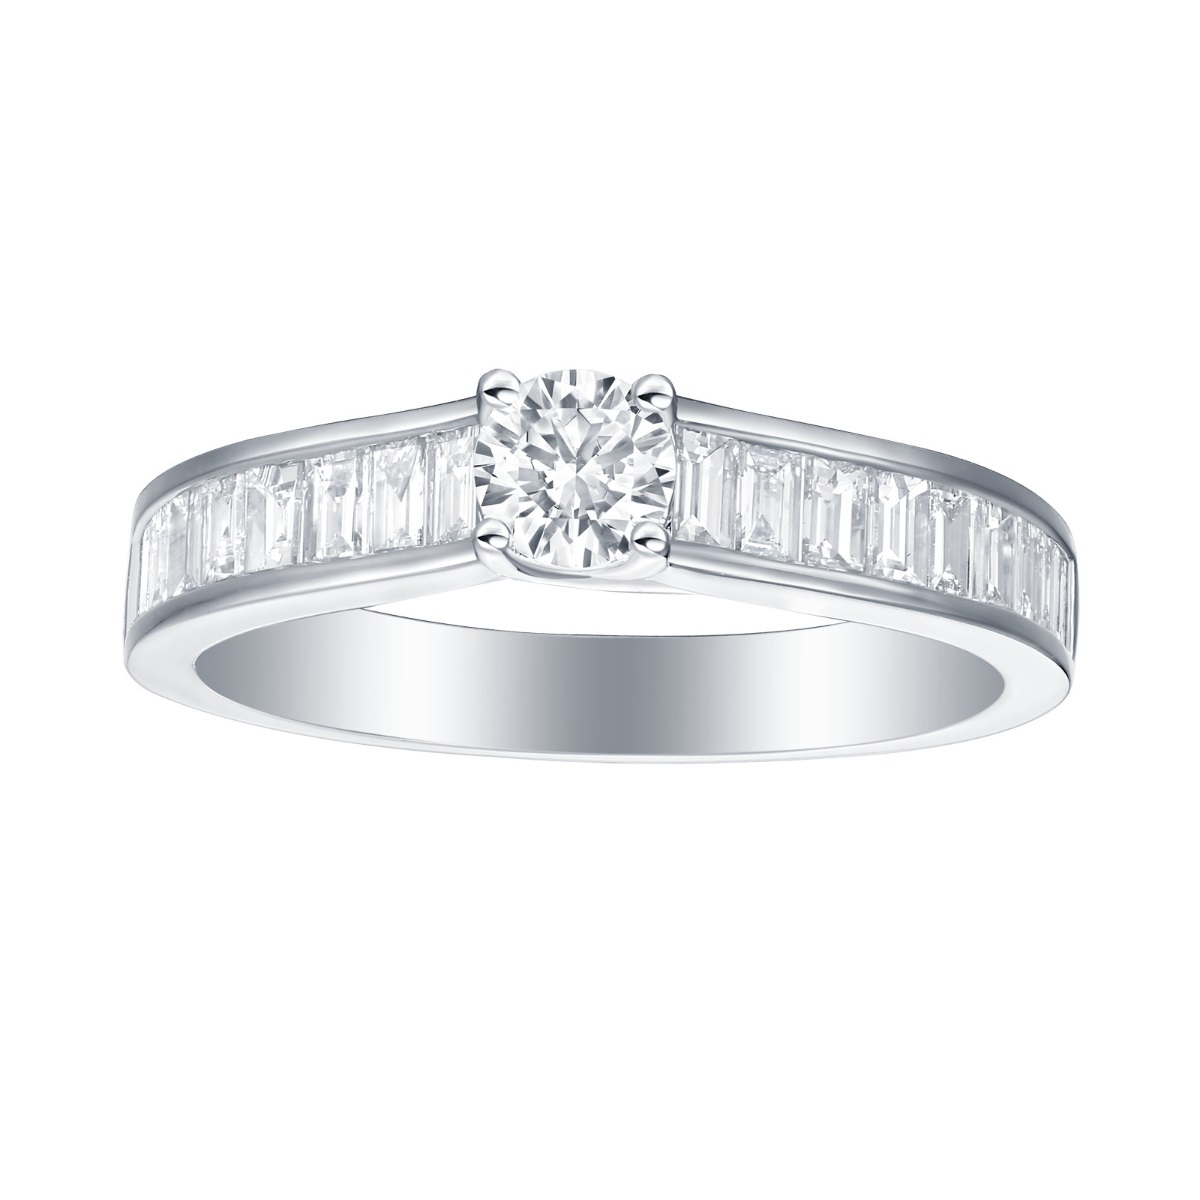 R35836WHT – 18K White Gold Diamond Ring, 1.01 TCW